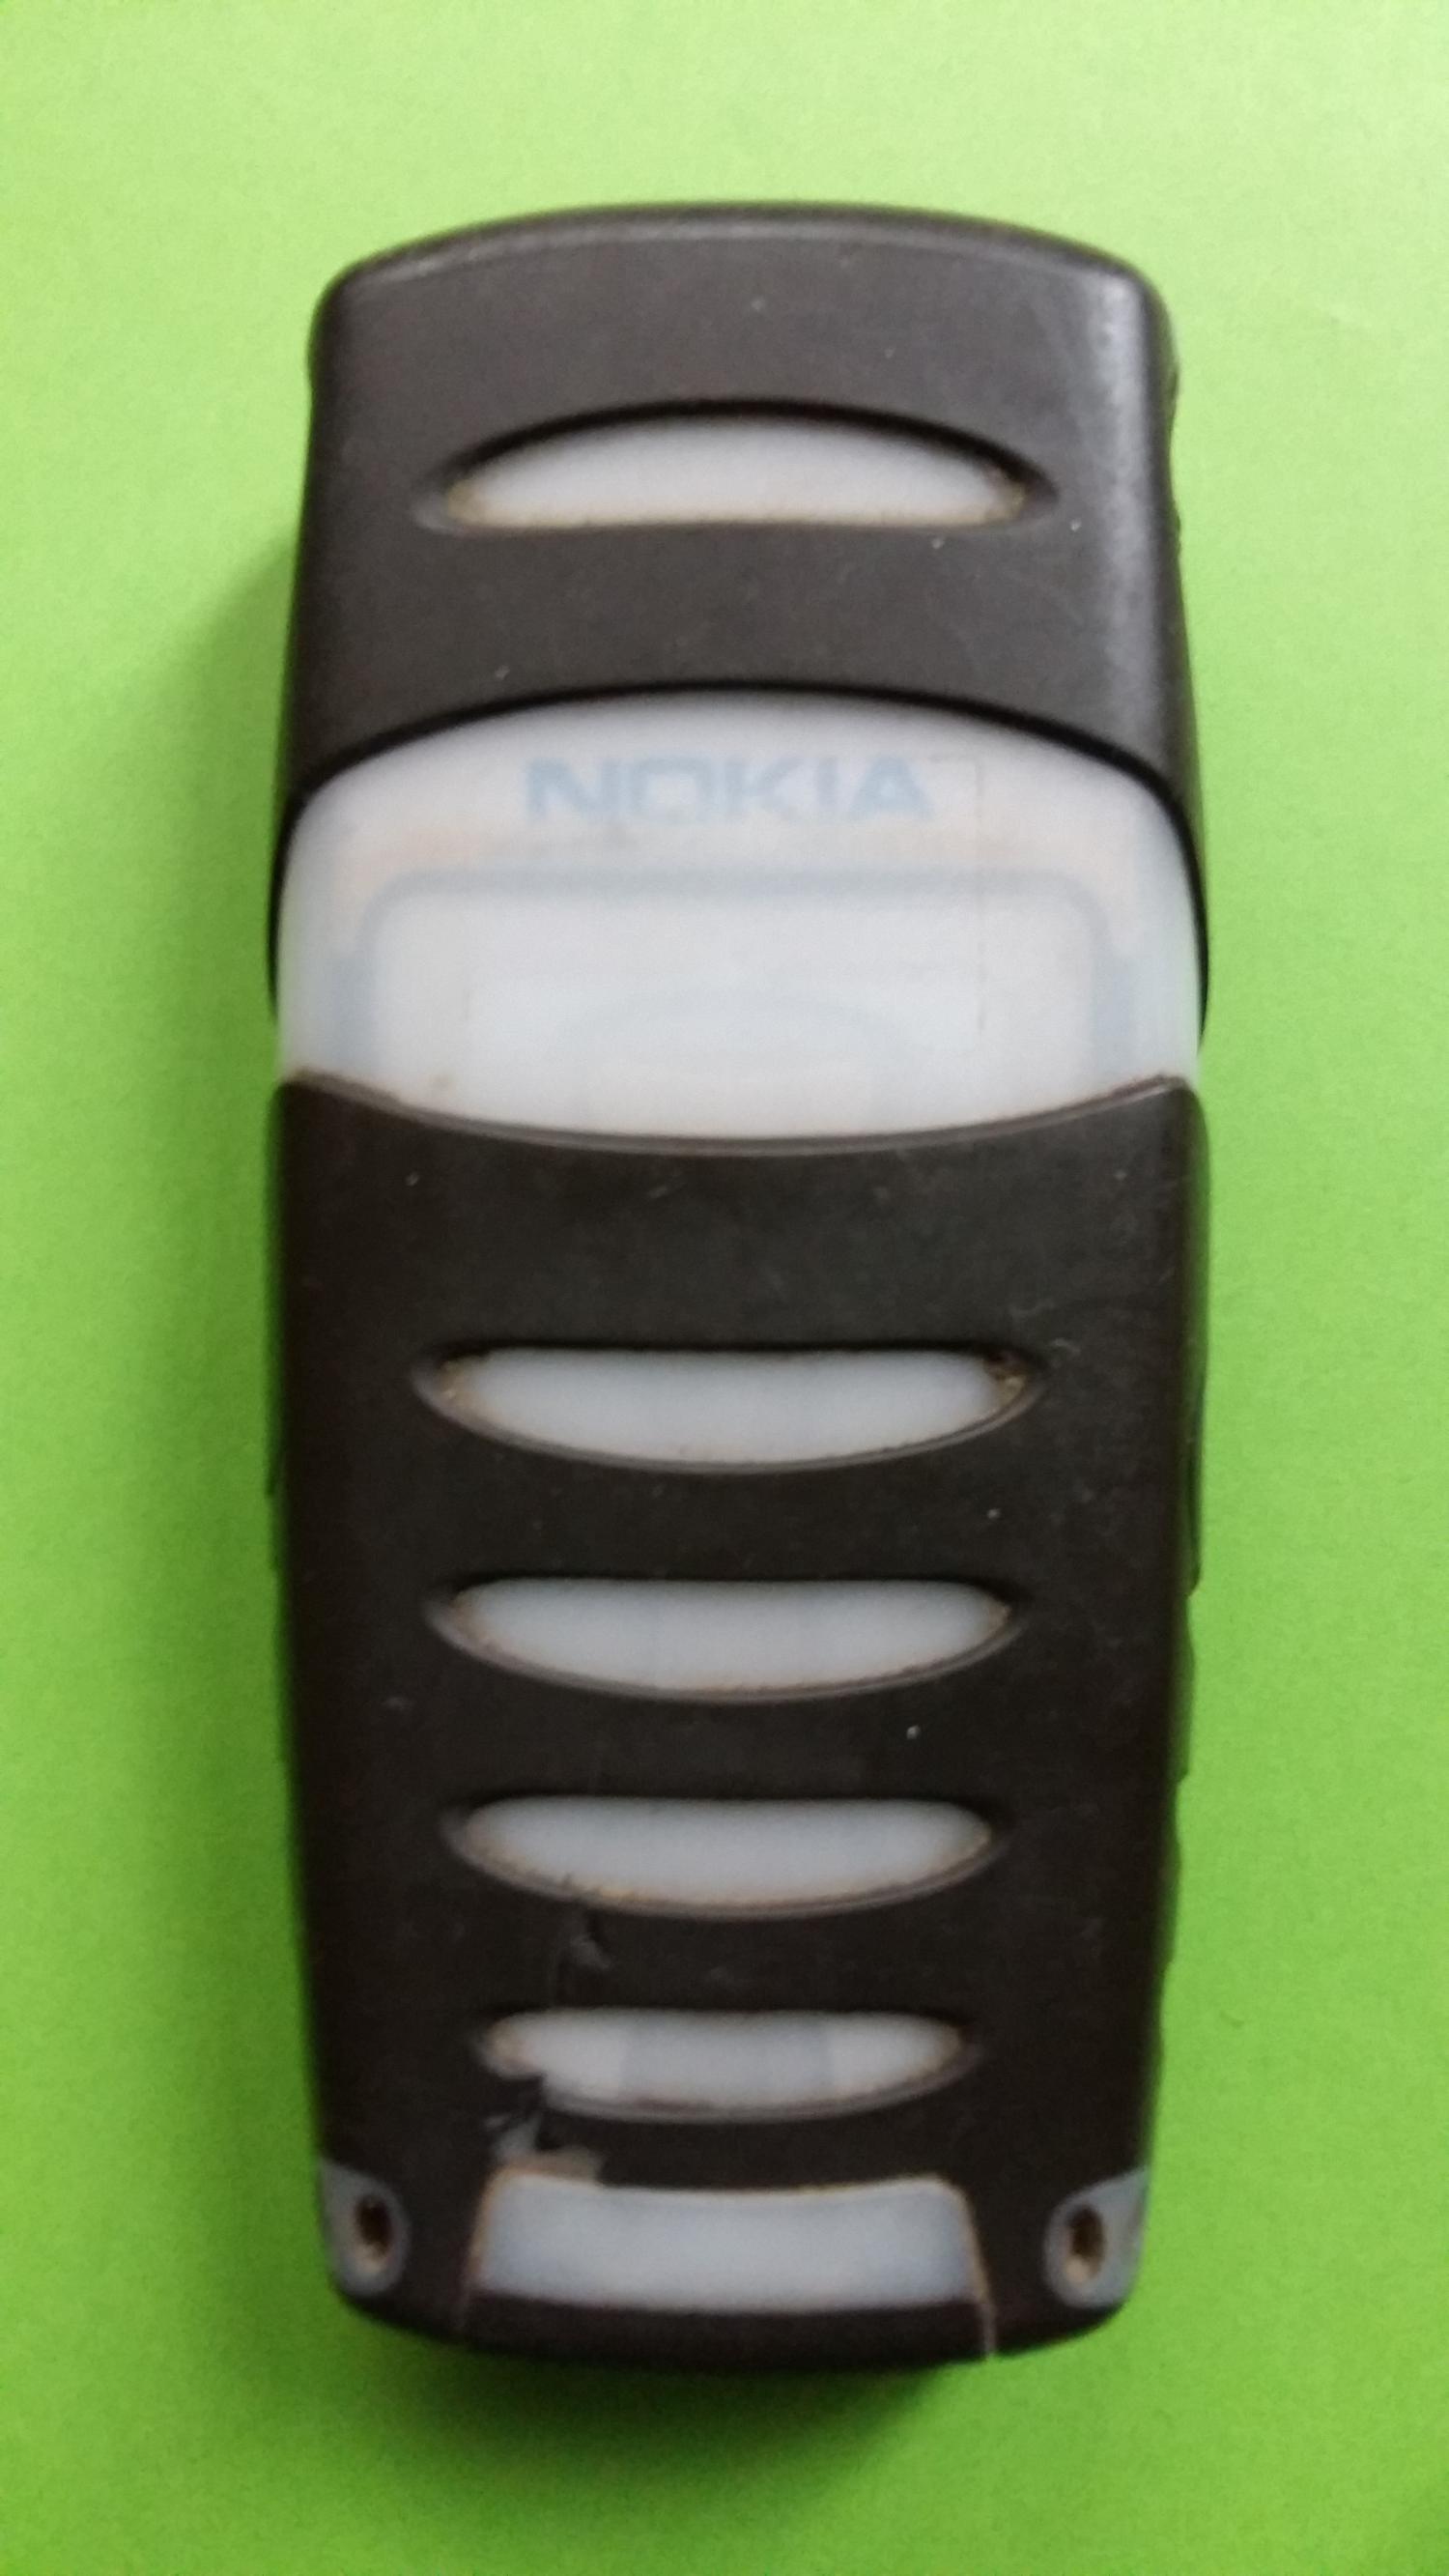 image-7311837-Nokia 5100 (3)2.jpg